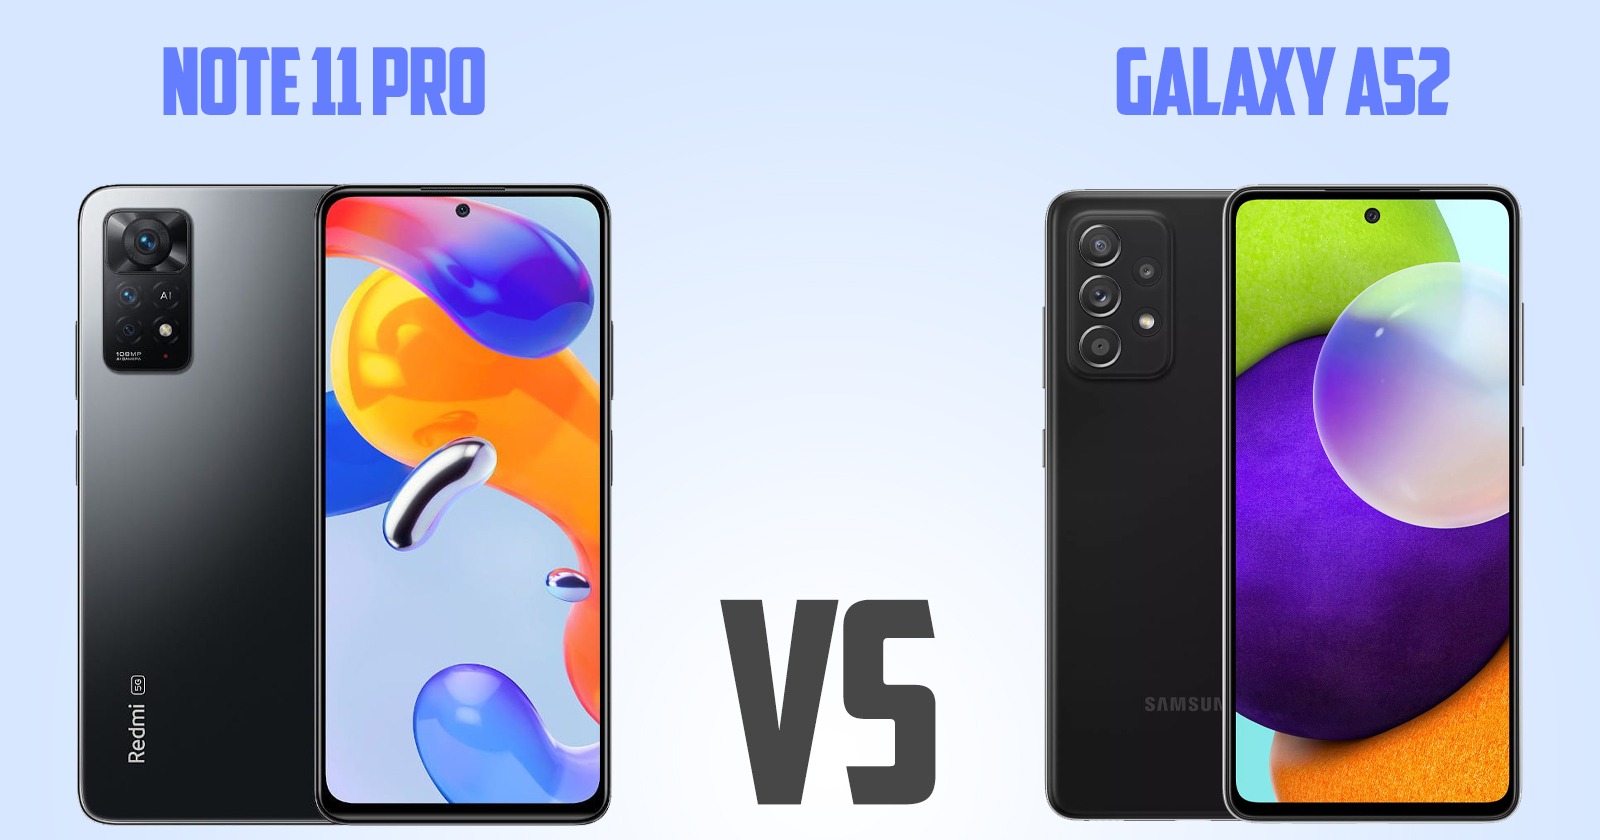 Samsung Galaxy A52 vs Redmi note 11 pro[ Full Comparison ]